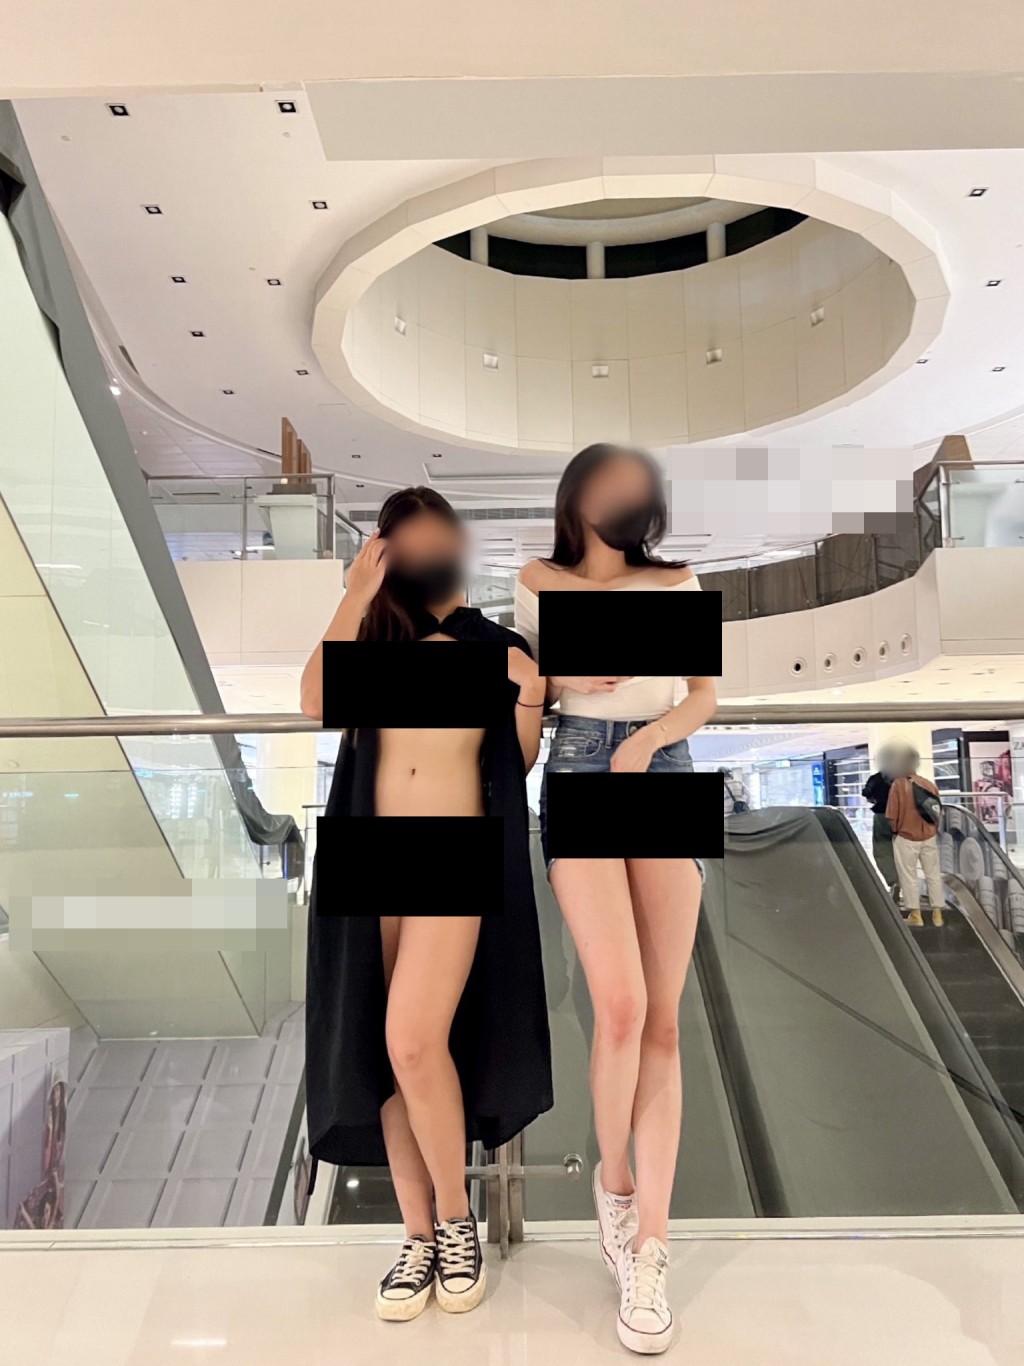 本港社交平台近年不断涌现这类港女在公众场所「露体」的相片